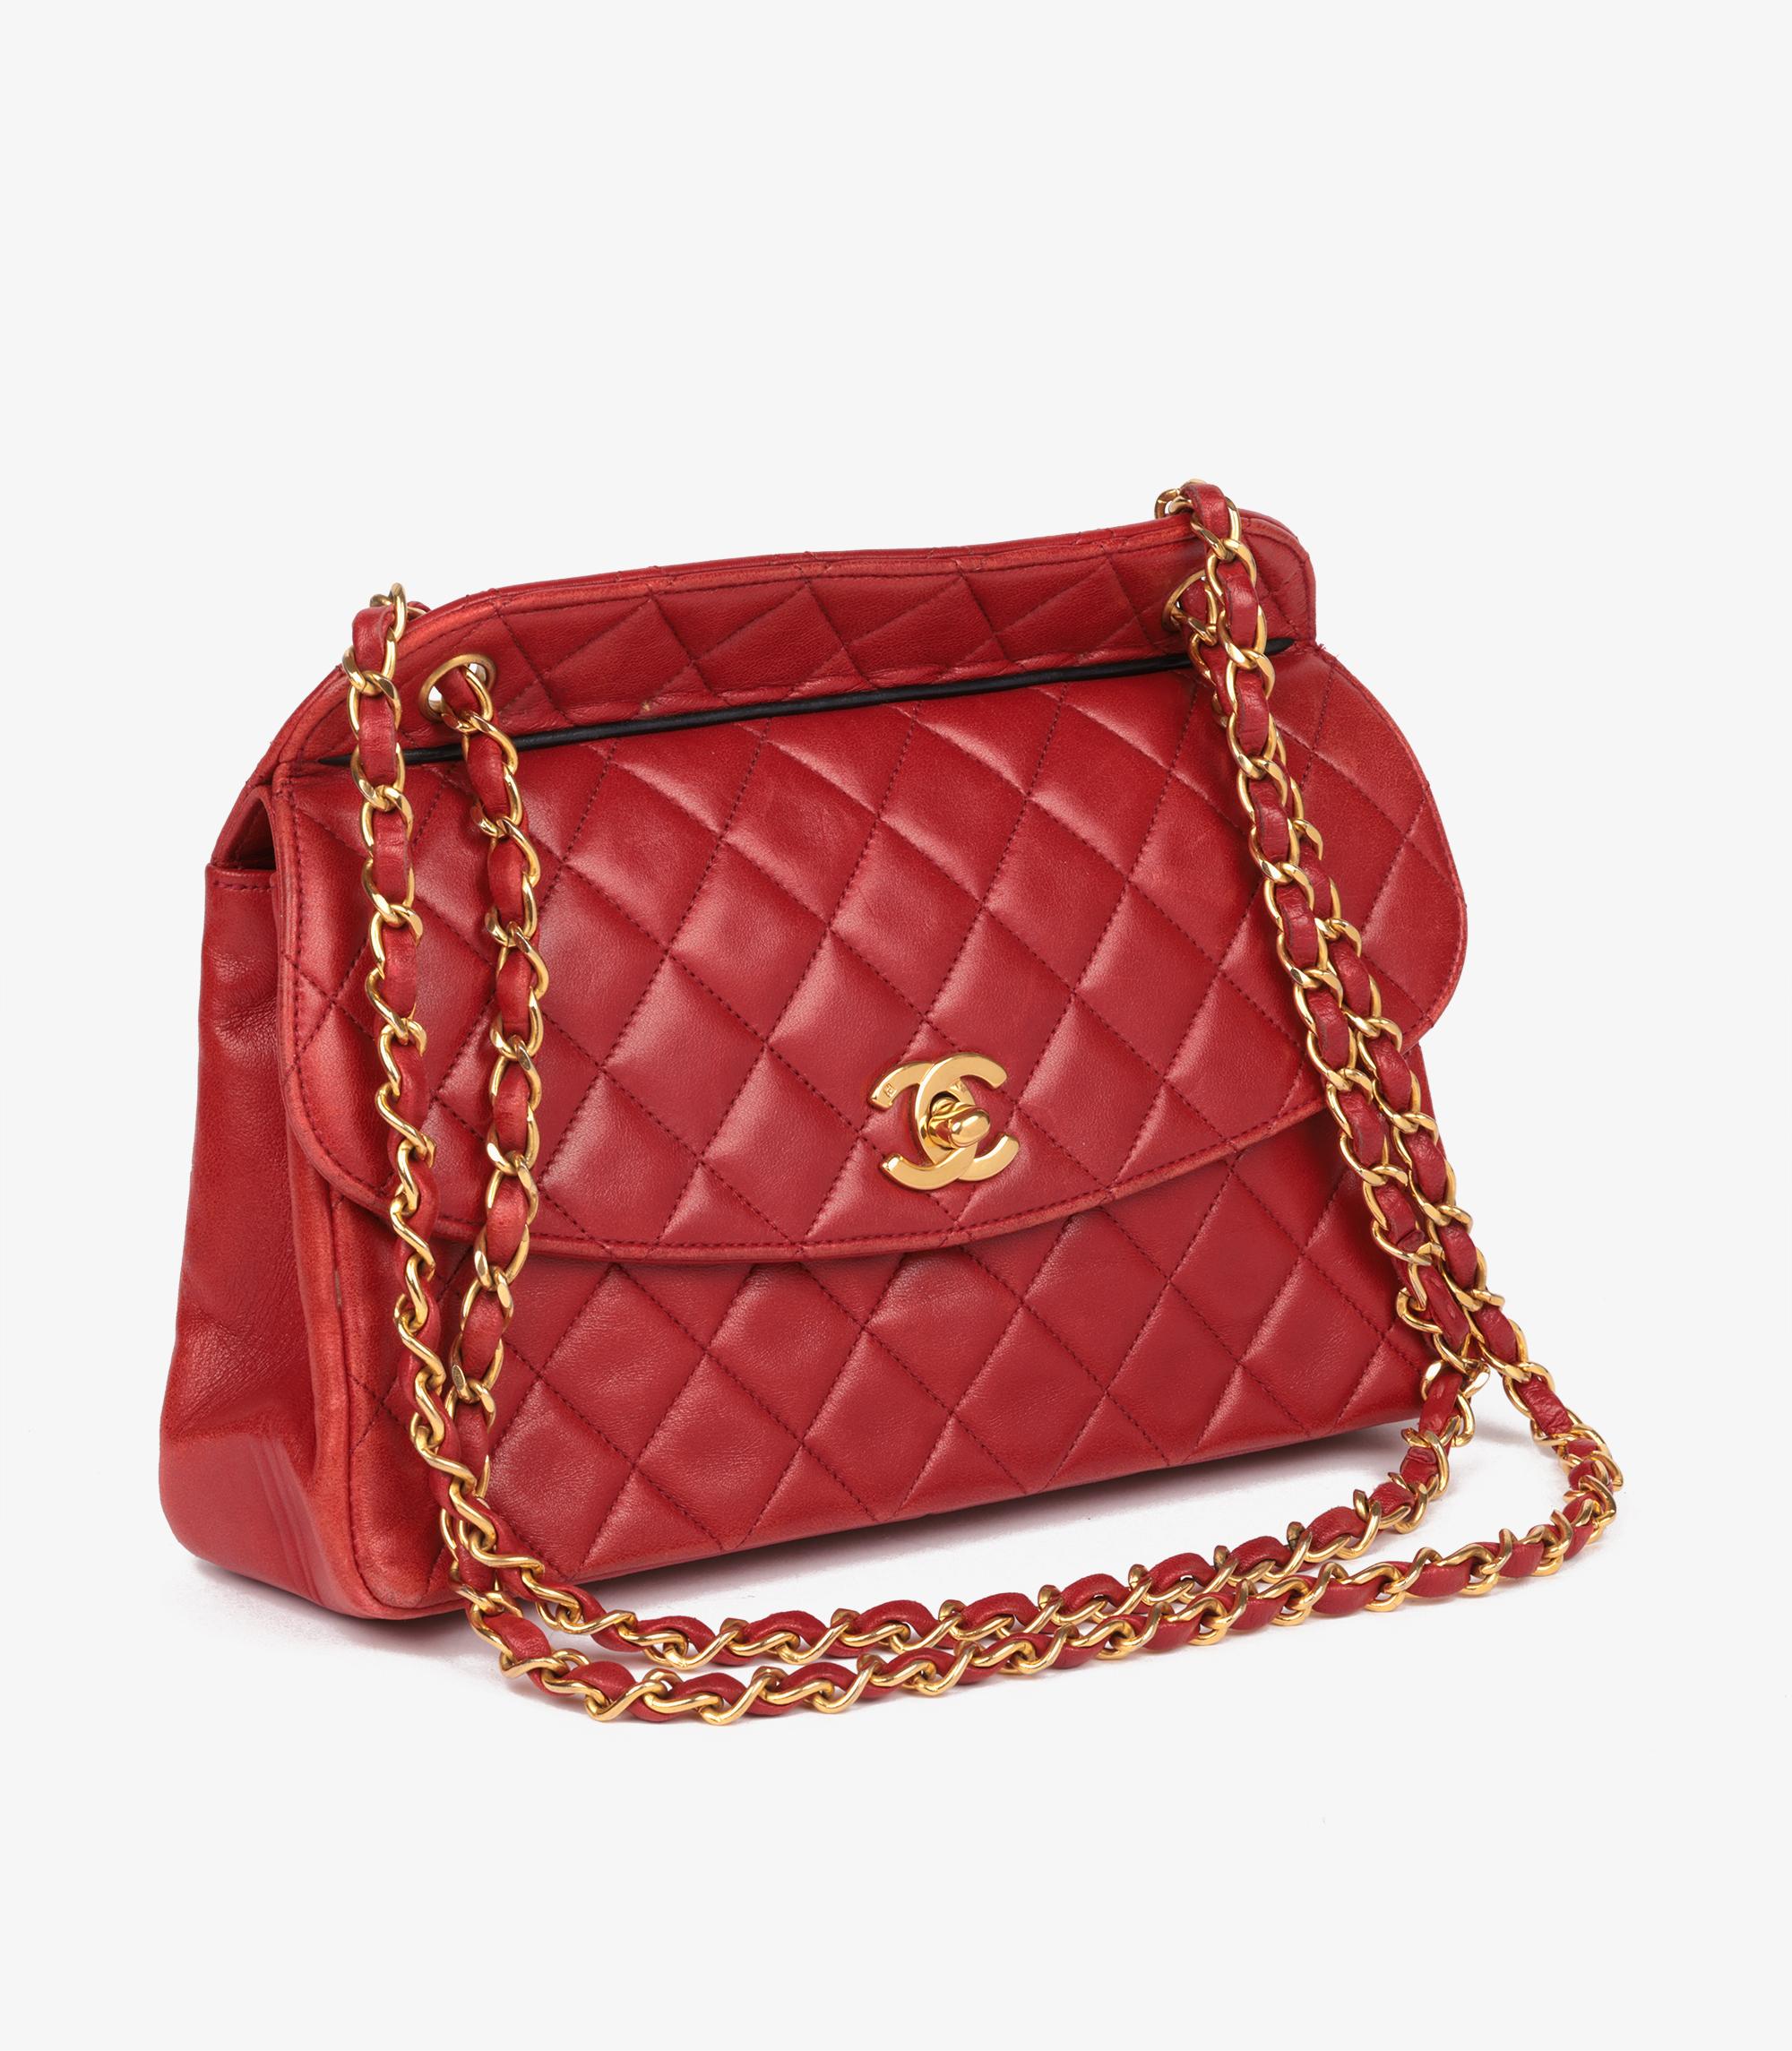 Chanel Rouge Quilted Lambskin Vintage Medium Classic Single Flap Bag With Pouch

Marque : Chanel
Modèle- Sac classique moyen à rabat unique
Type de produit- Épaule
Numéro de série - 1505971
Age- Circa 1989
Accompagné de : Chanel Dust Bag,